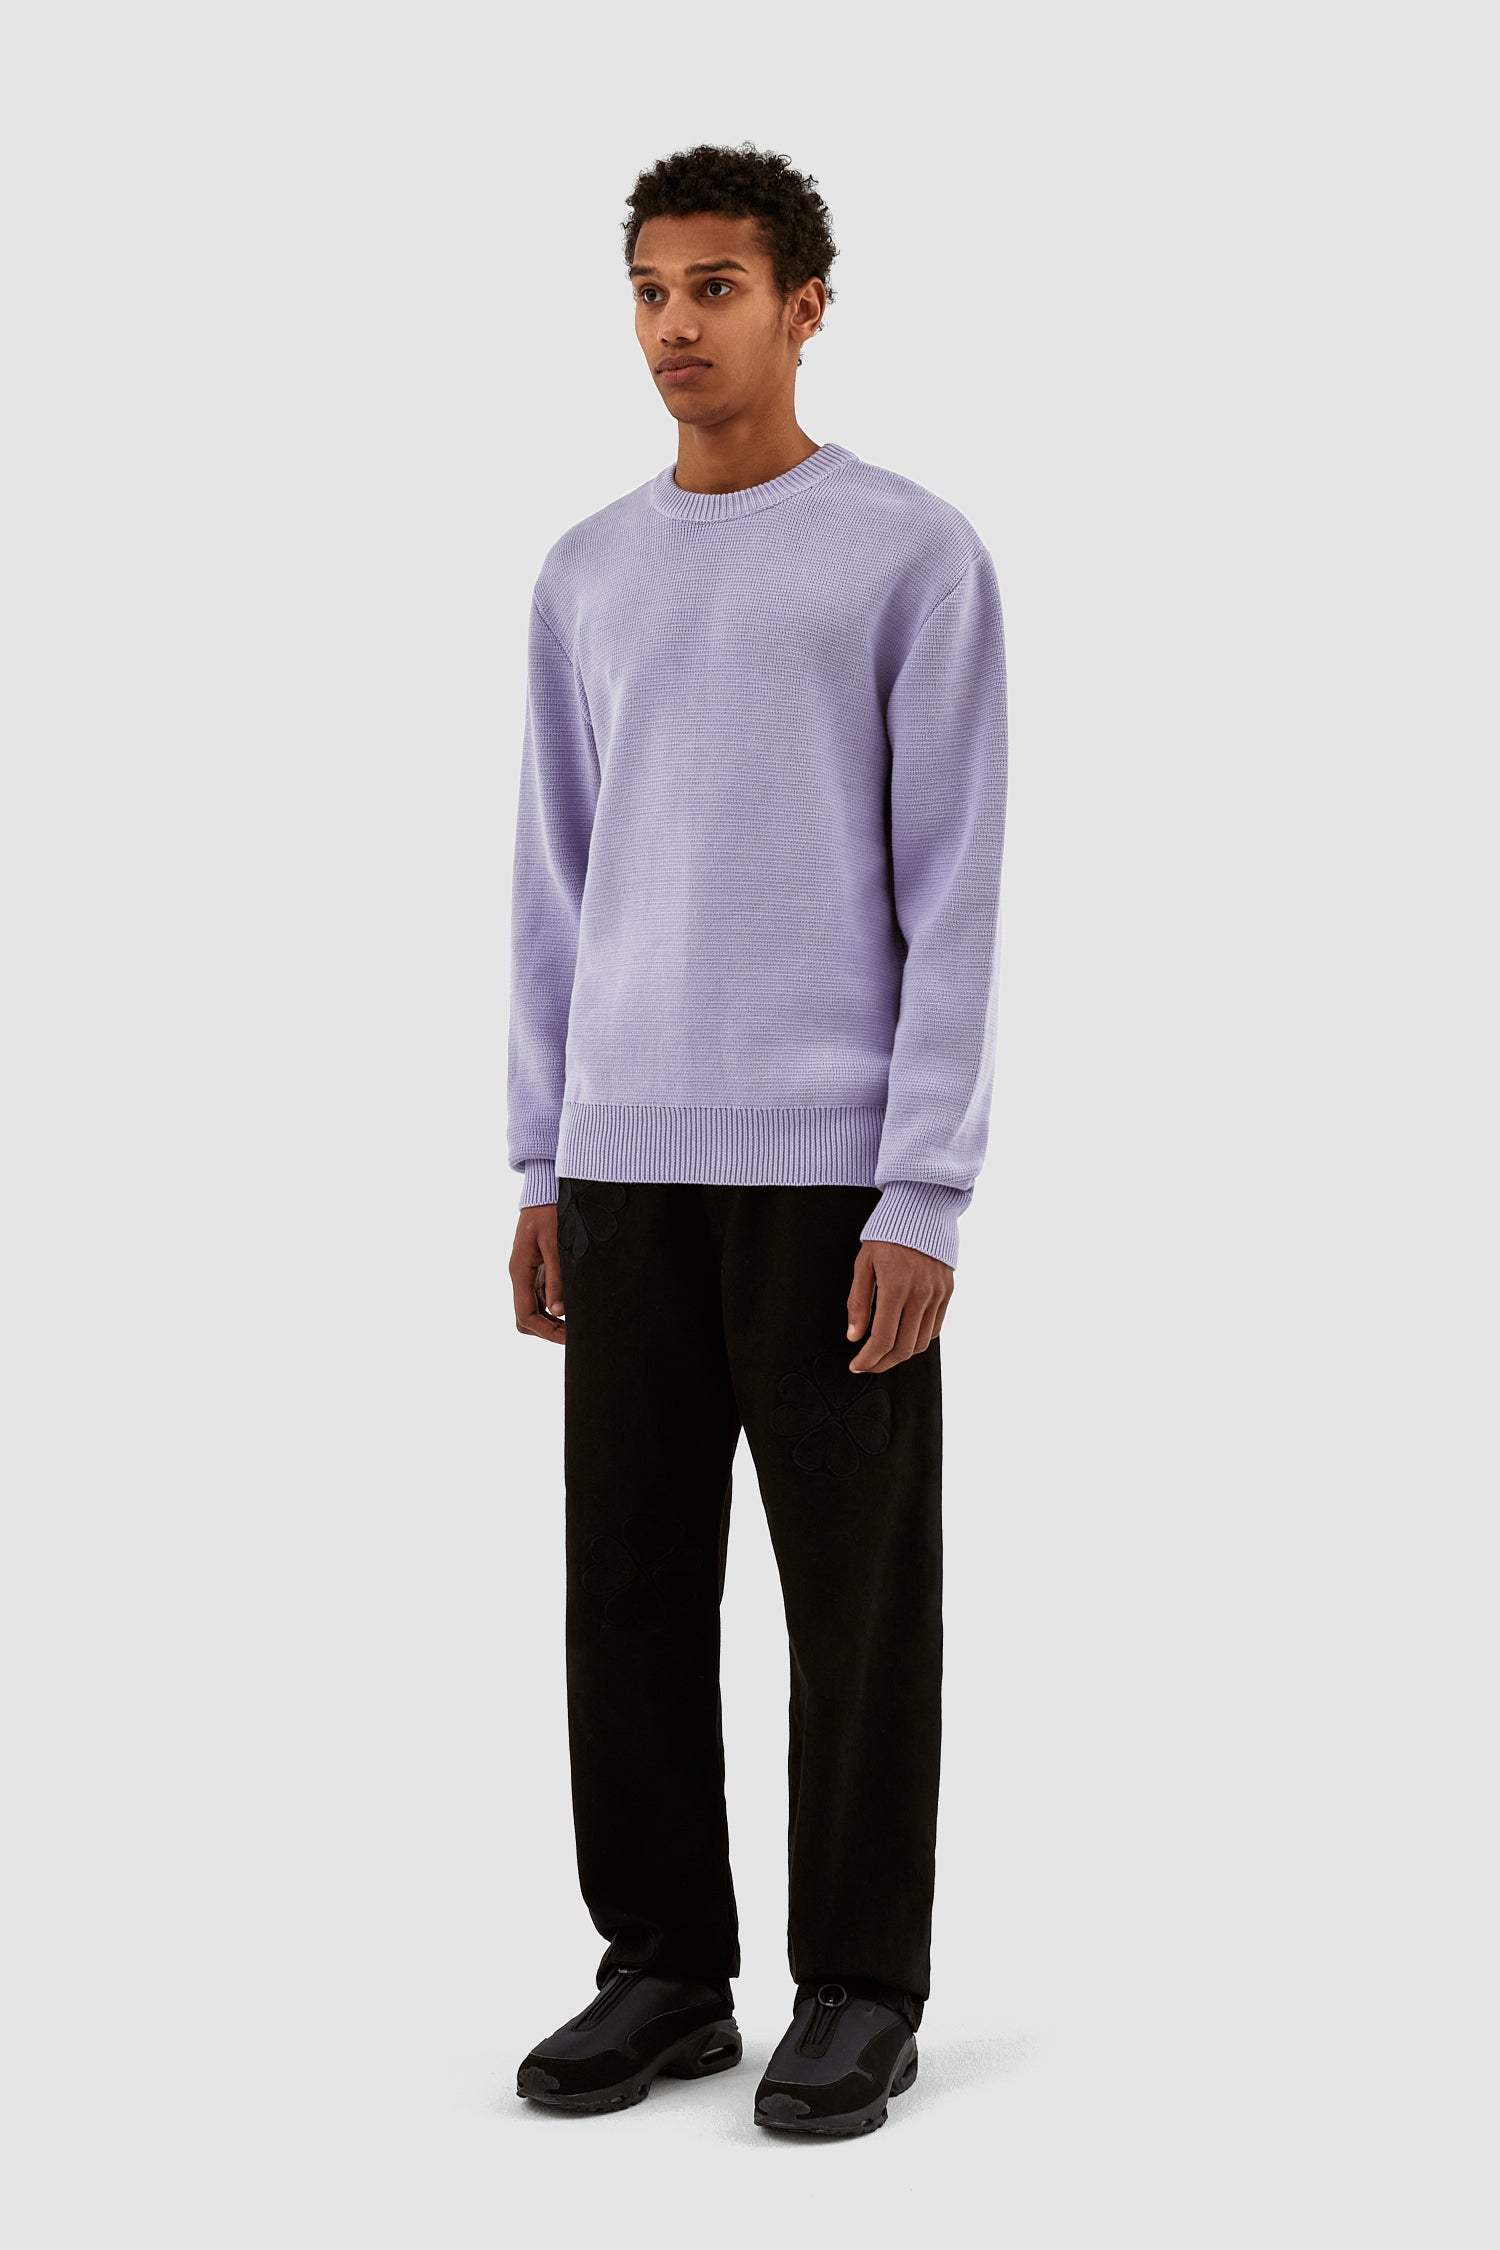 Kobe Back Heart Sweater - Purple